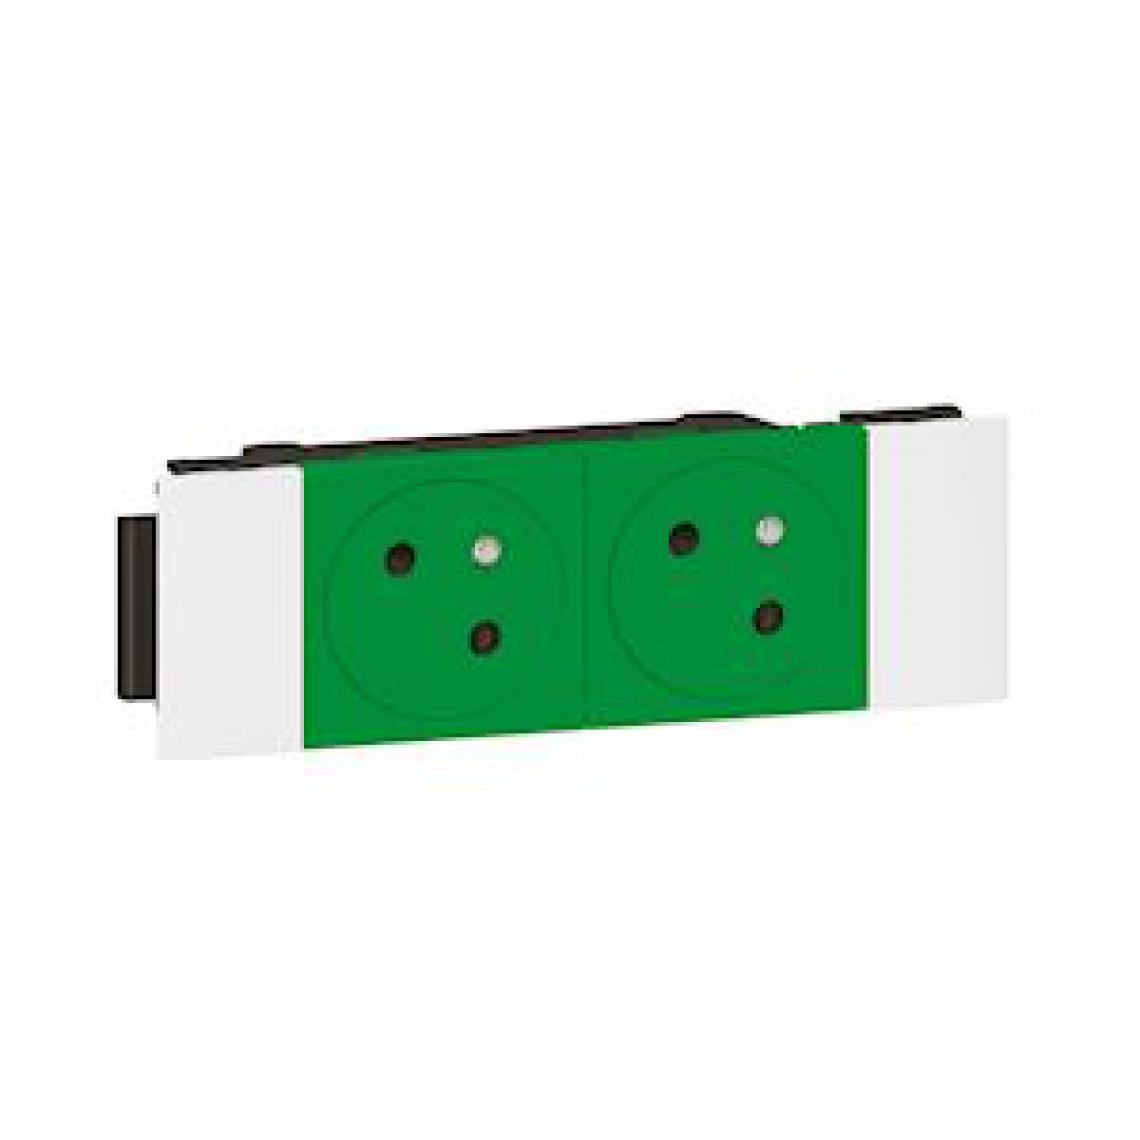 Legrand - prise de courant - 2 x 2p+t - verte - clippage direct - surface - legrand 077192l - Interrupteurs et prises en saillie